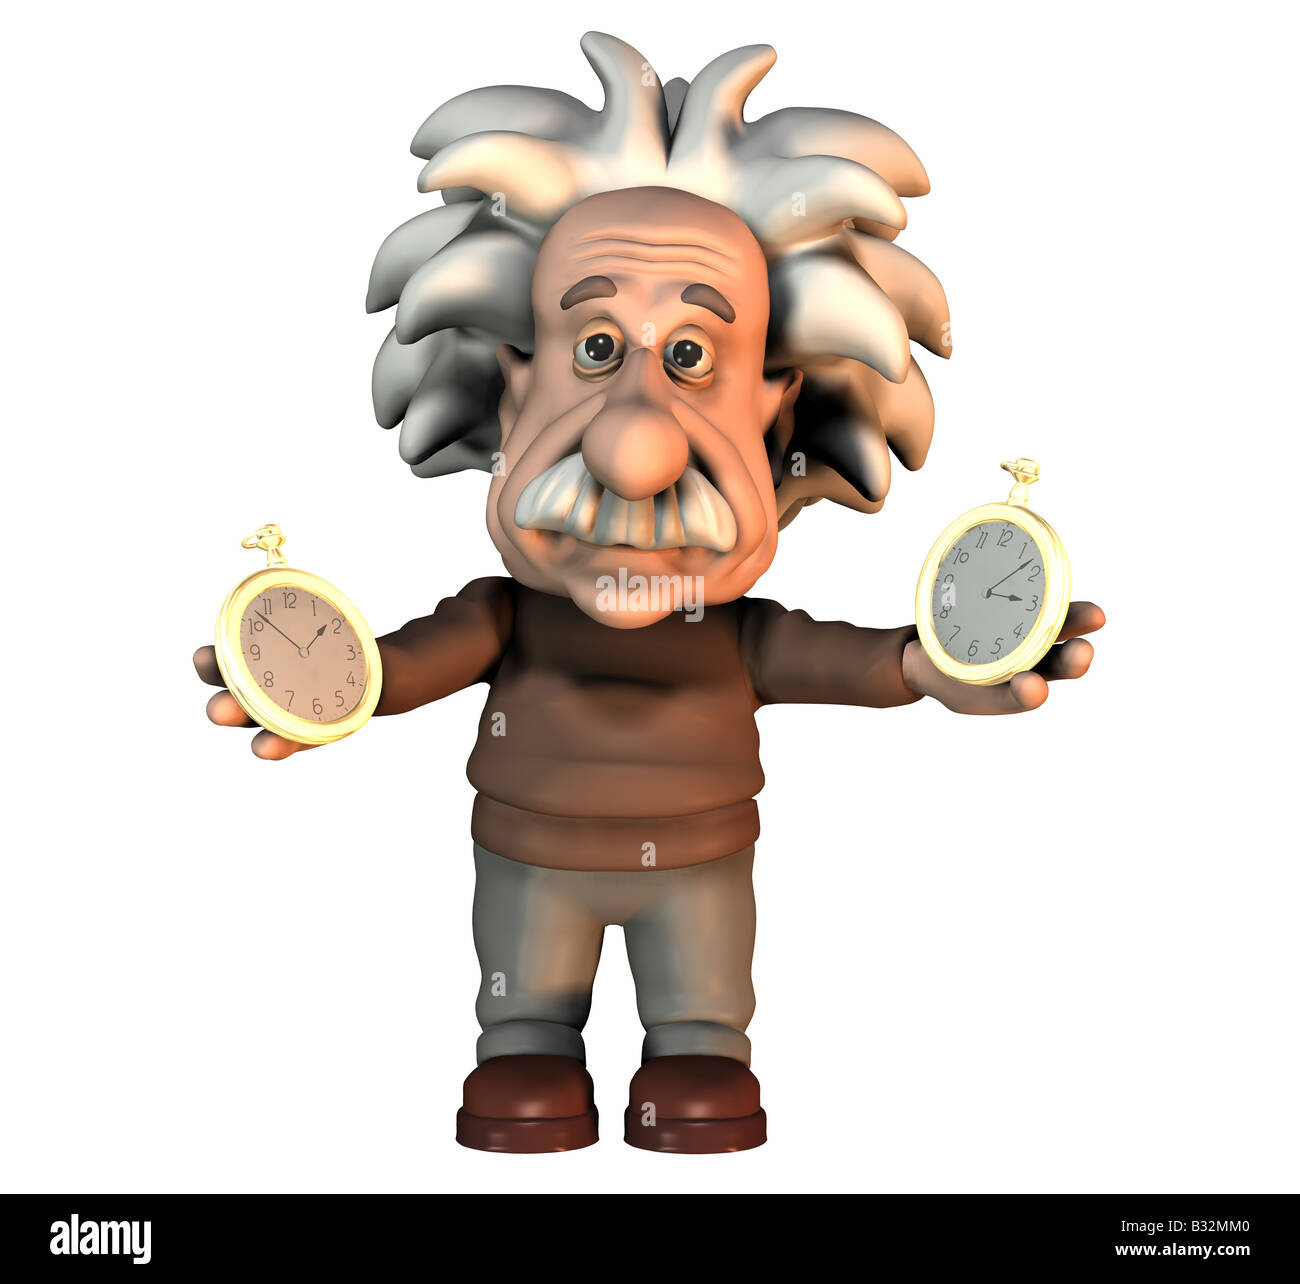 Albert Einstein with a clock Stock Photo